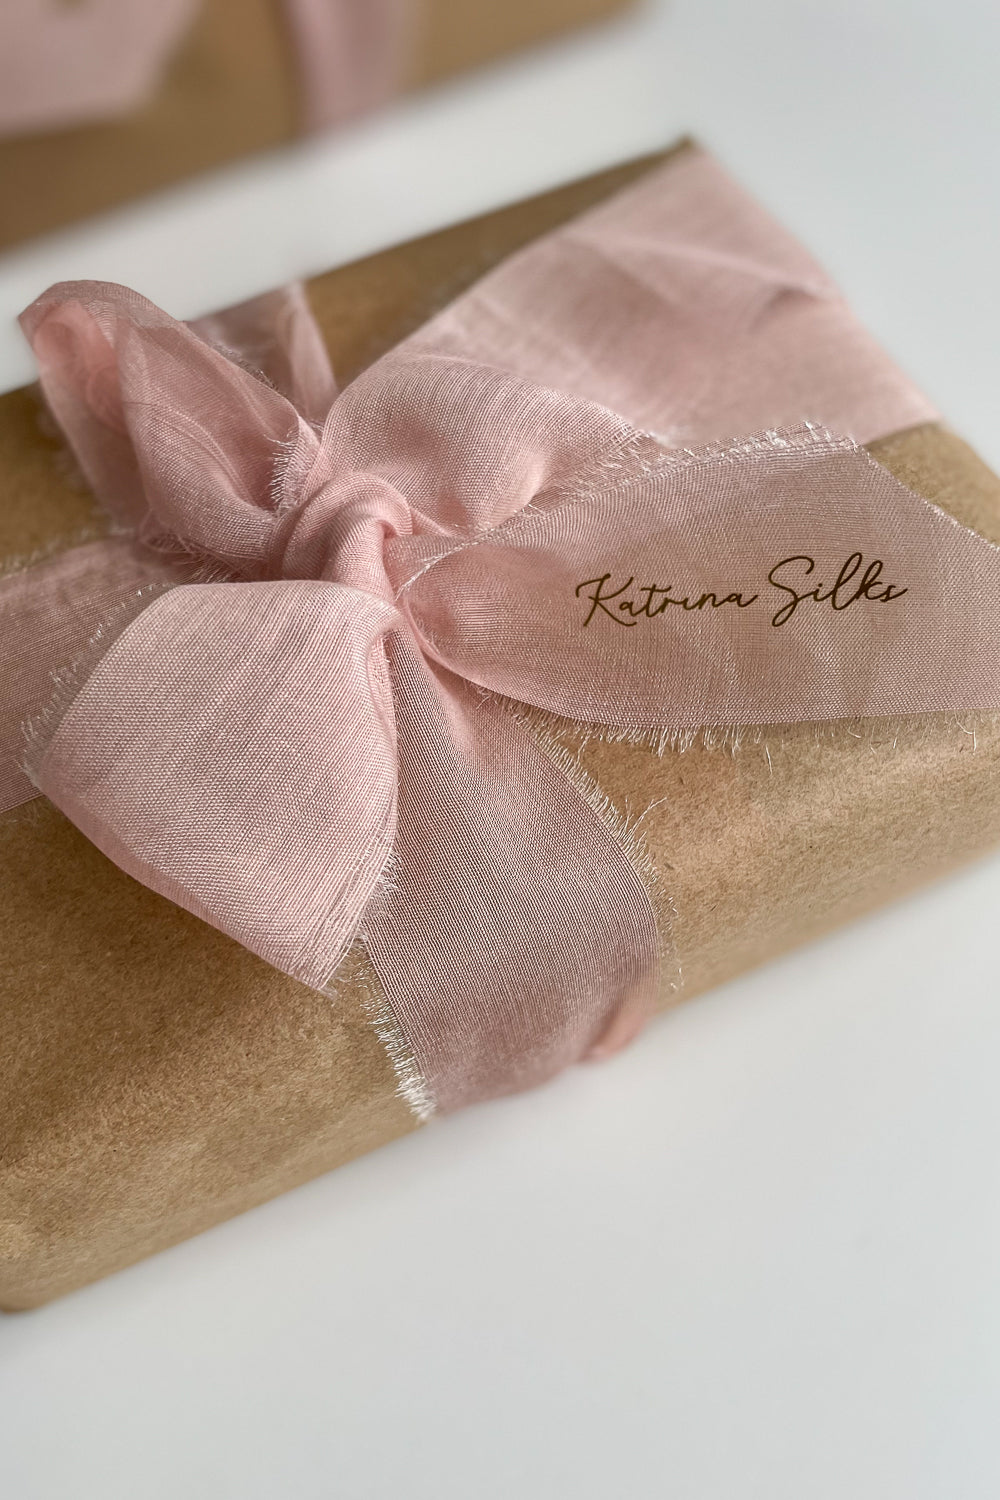 Natural silk organza gift wrapping bow